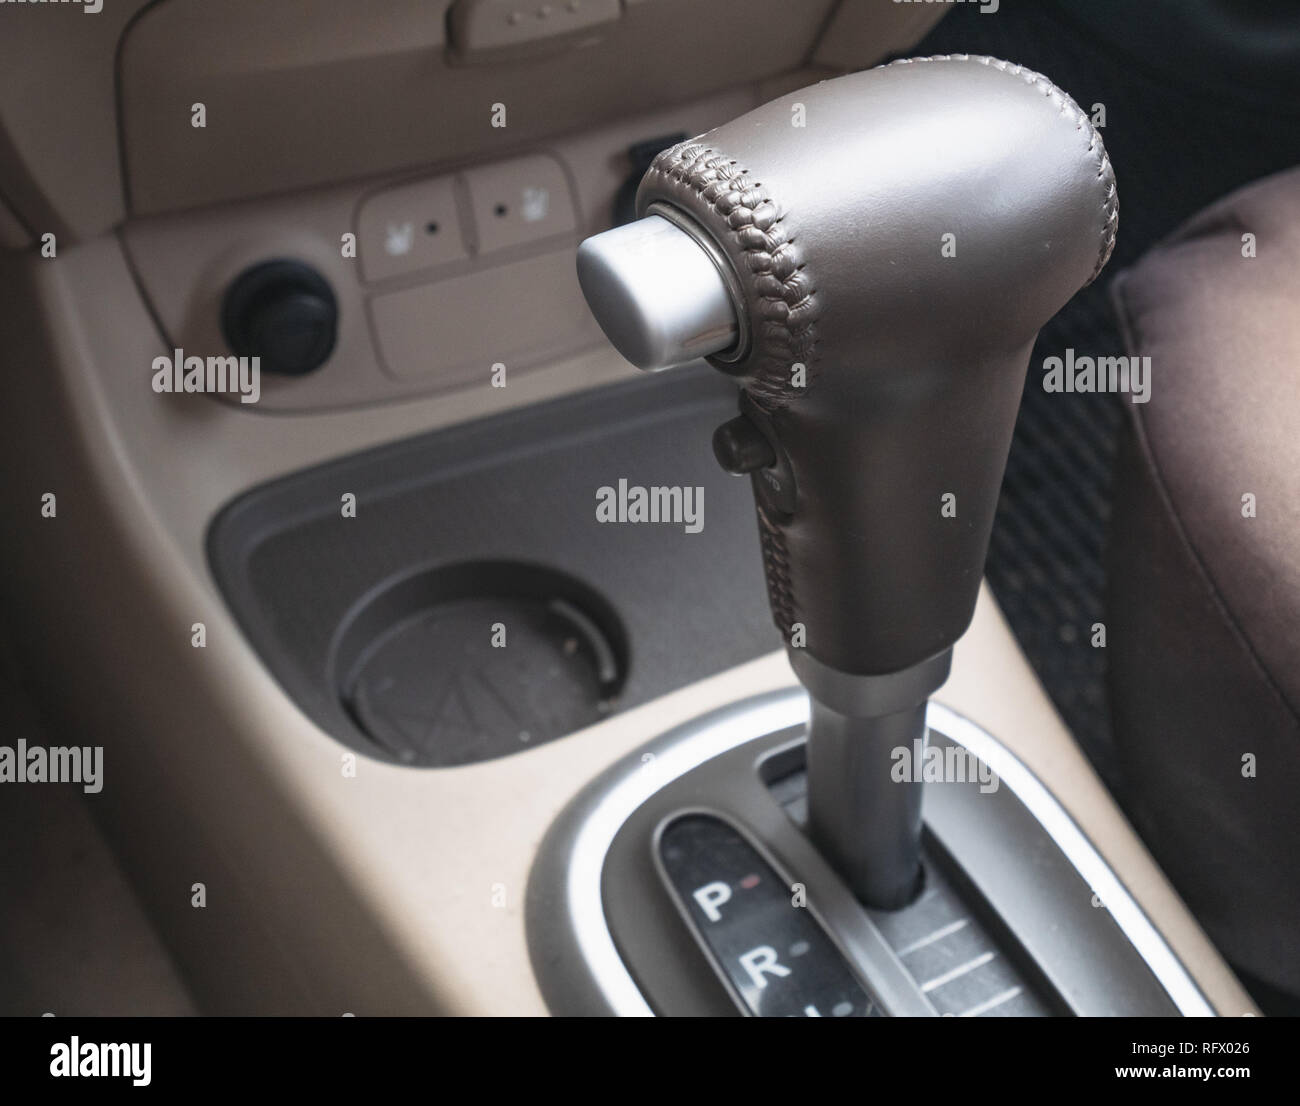 Mittelkonsole Tasten in einem Auto Stockfotografie - Alamy